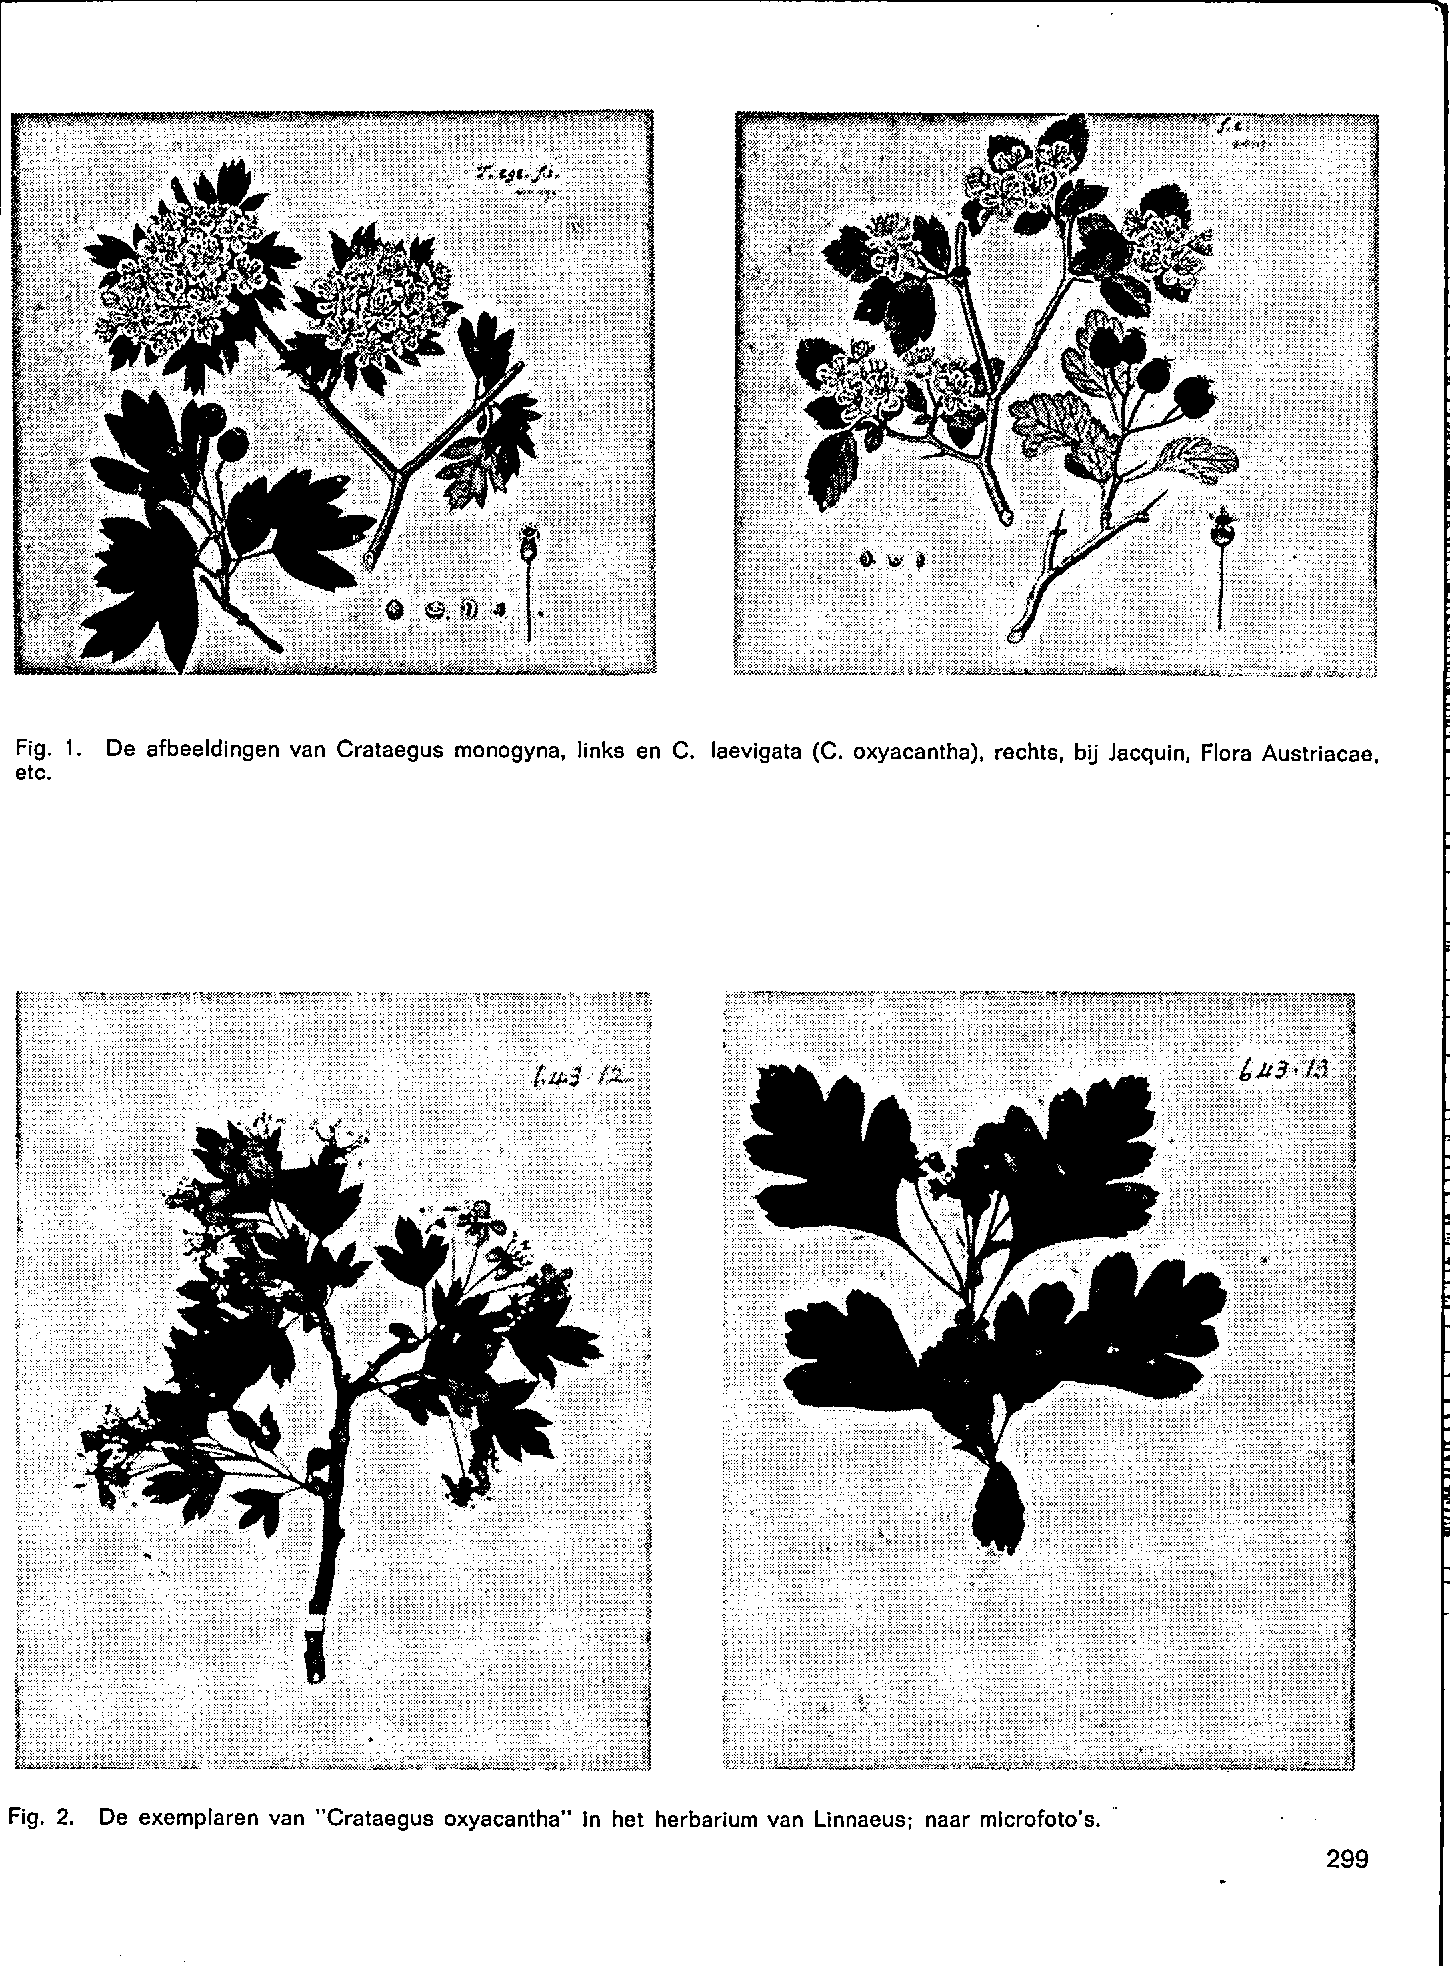 Fig. 1. etc. De afbeeldingen van Crataegus monogyna links en C. laevigata (C.